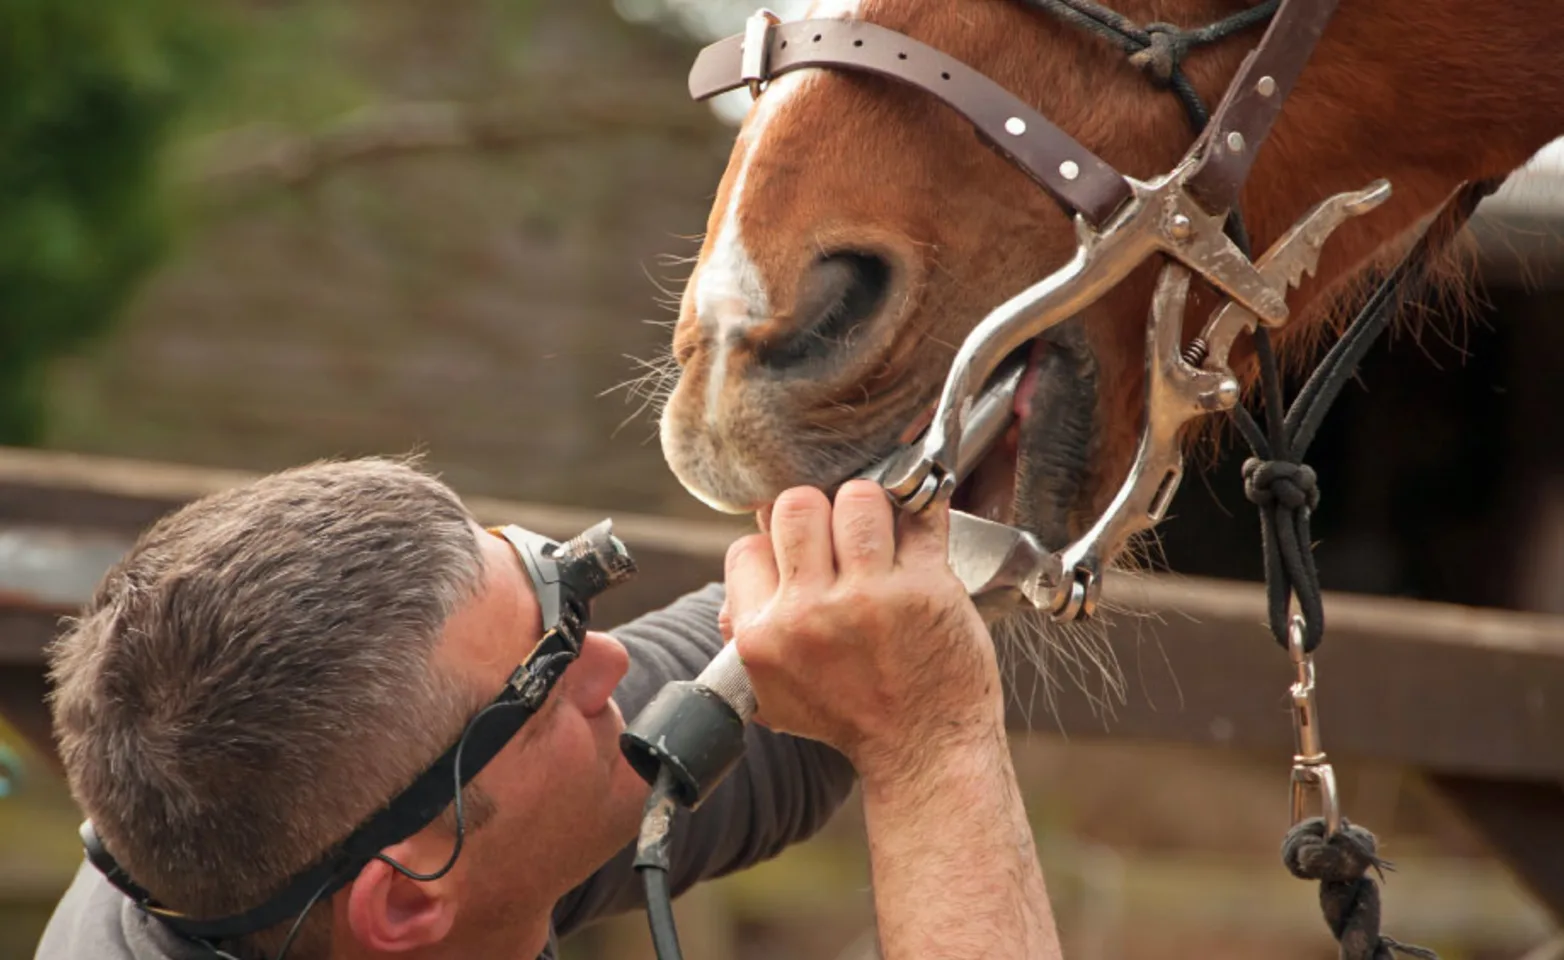 Horse receiving a dental examination